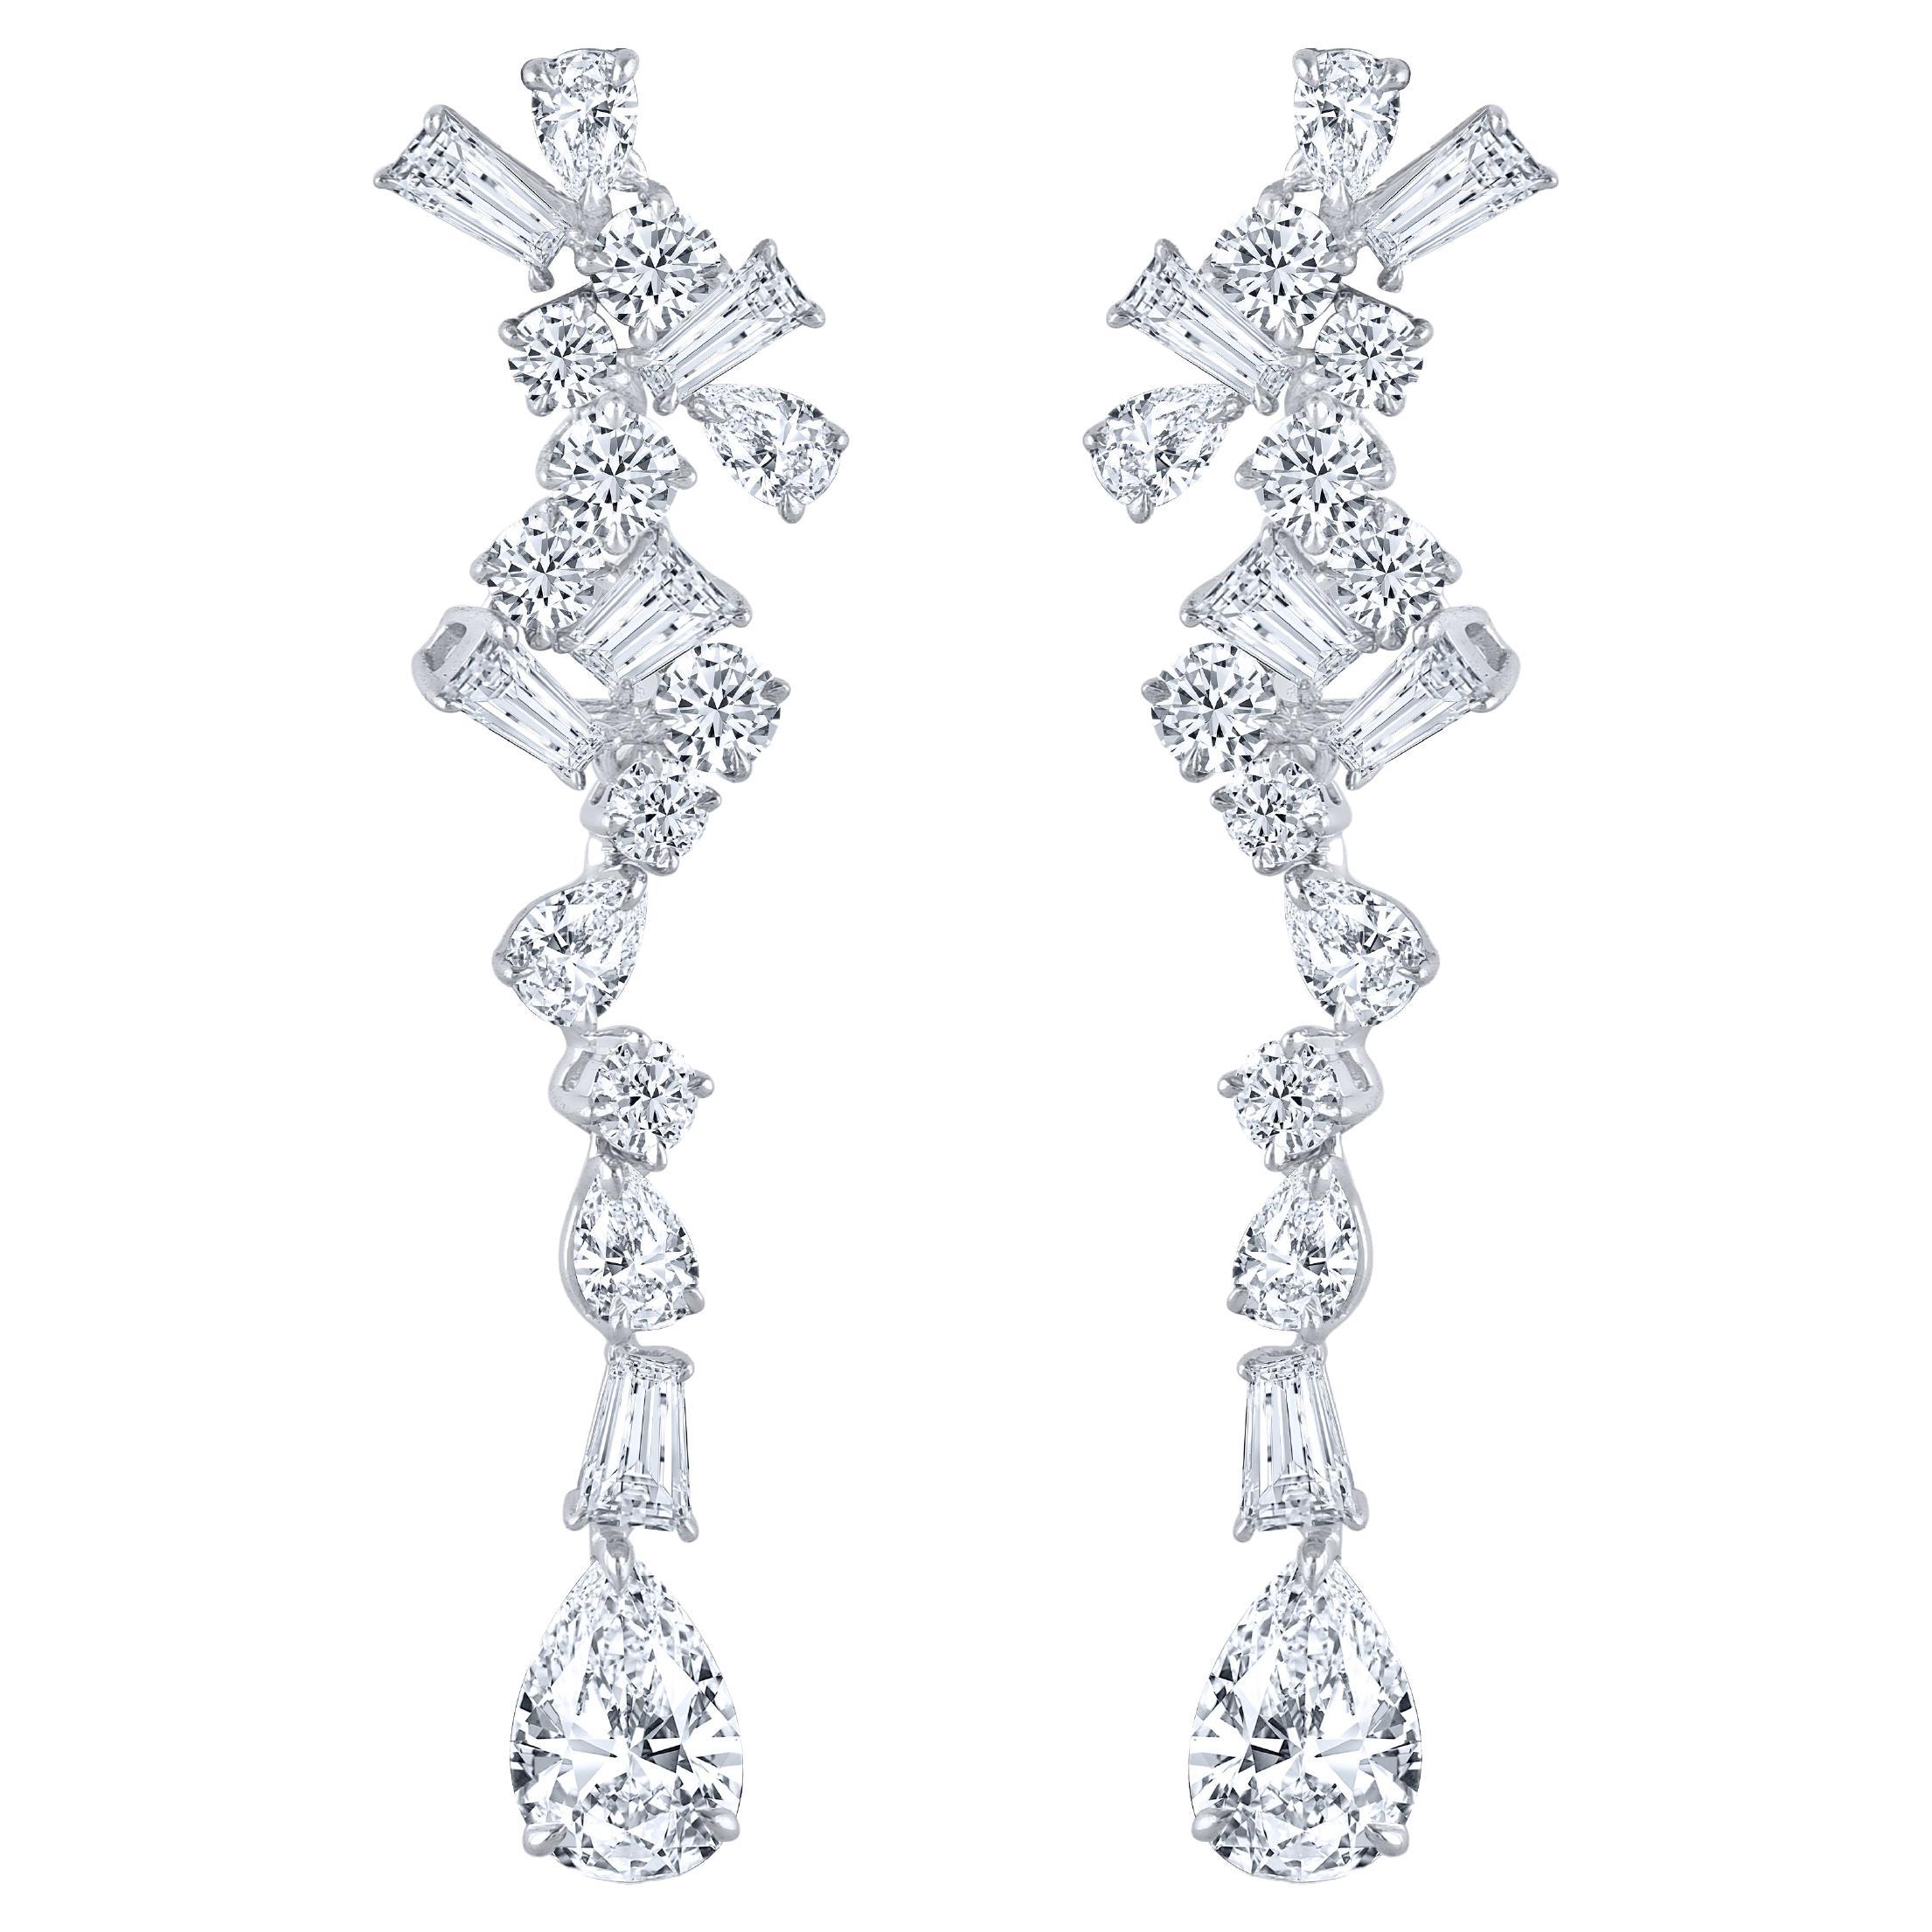 Harakh Colourless Diamond 2.75 Carat Dangling Earrings in 18 KT White Gold